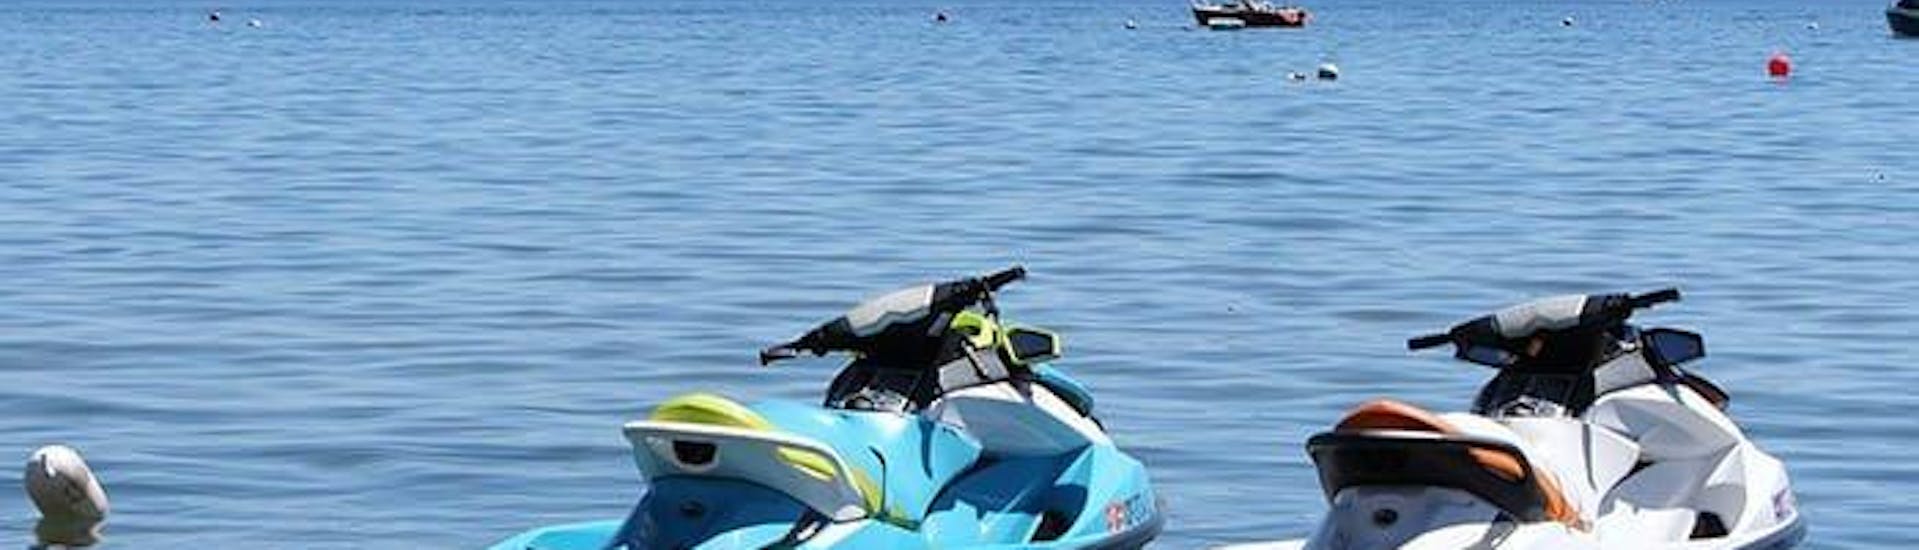 2 motos de agua de Take Off Ibiza están en el agua frente a la preciosa costa de la isla.